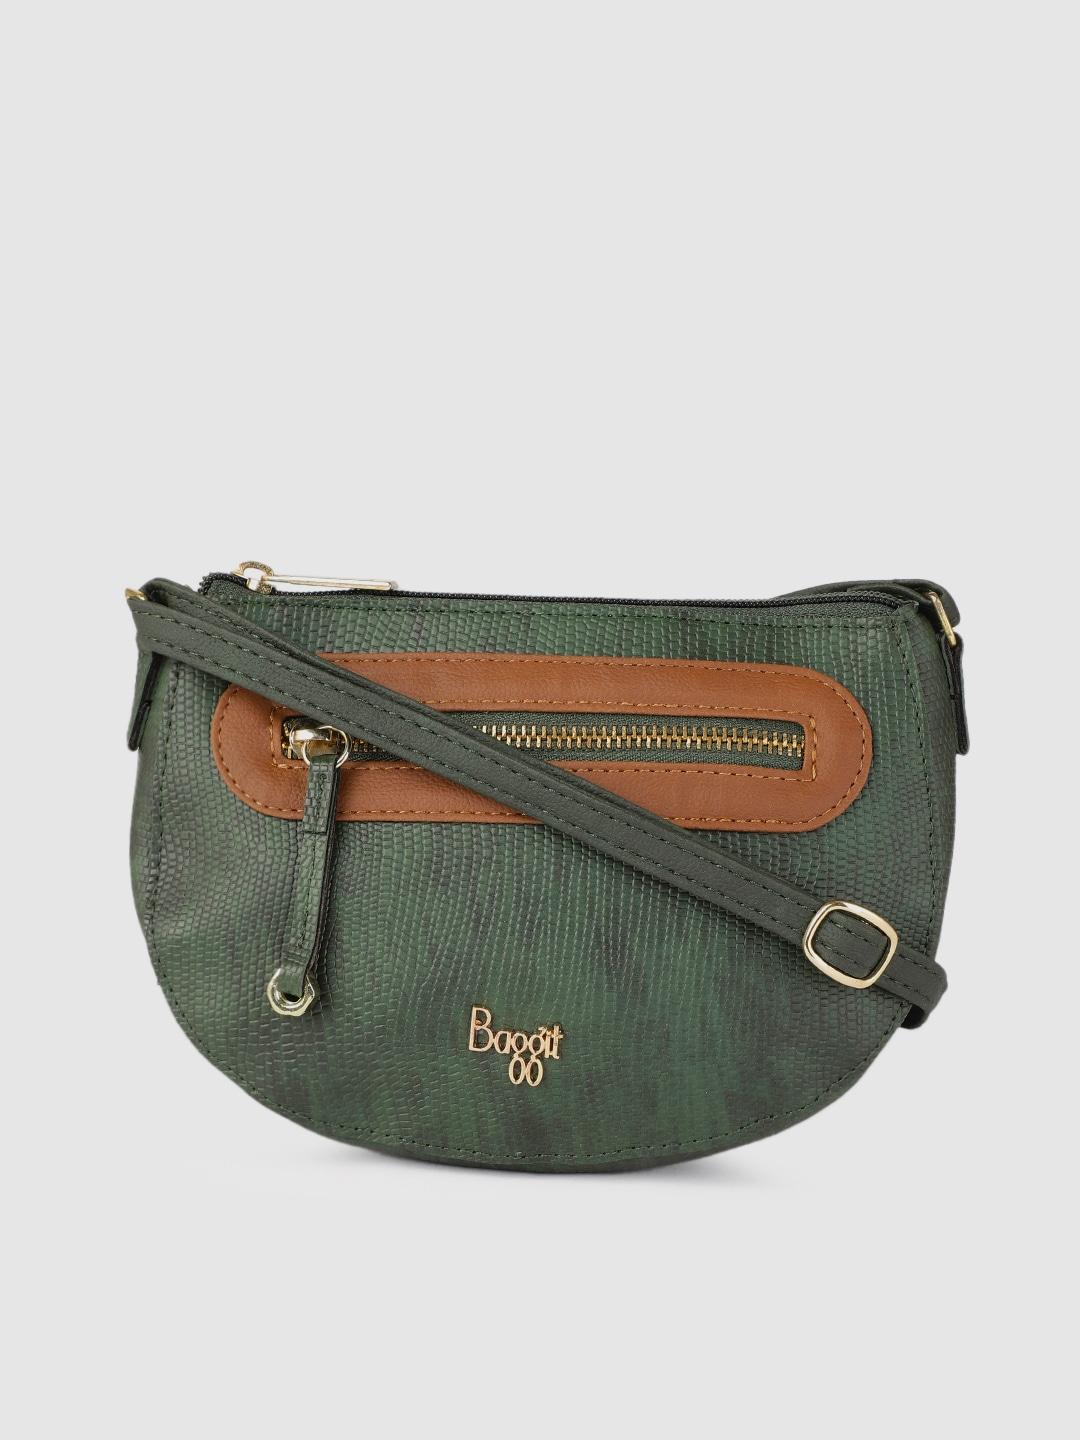 baggit-olive-green-textured-sling-bag